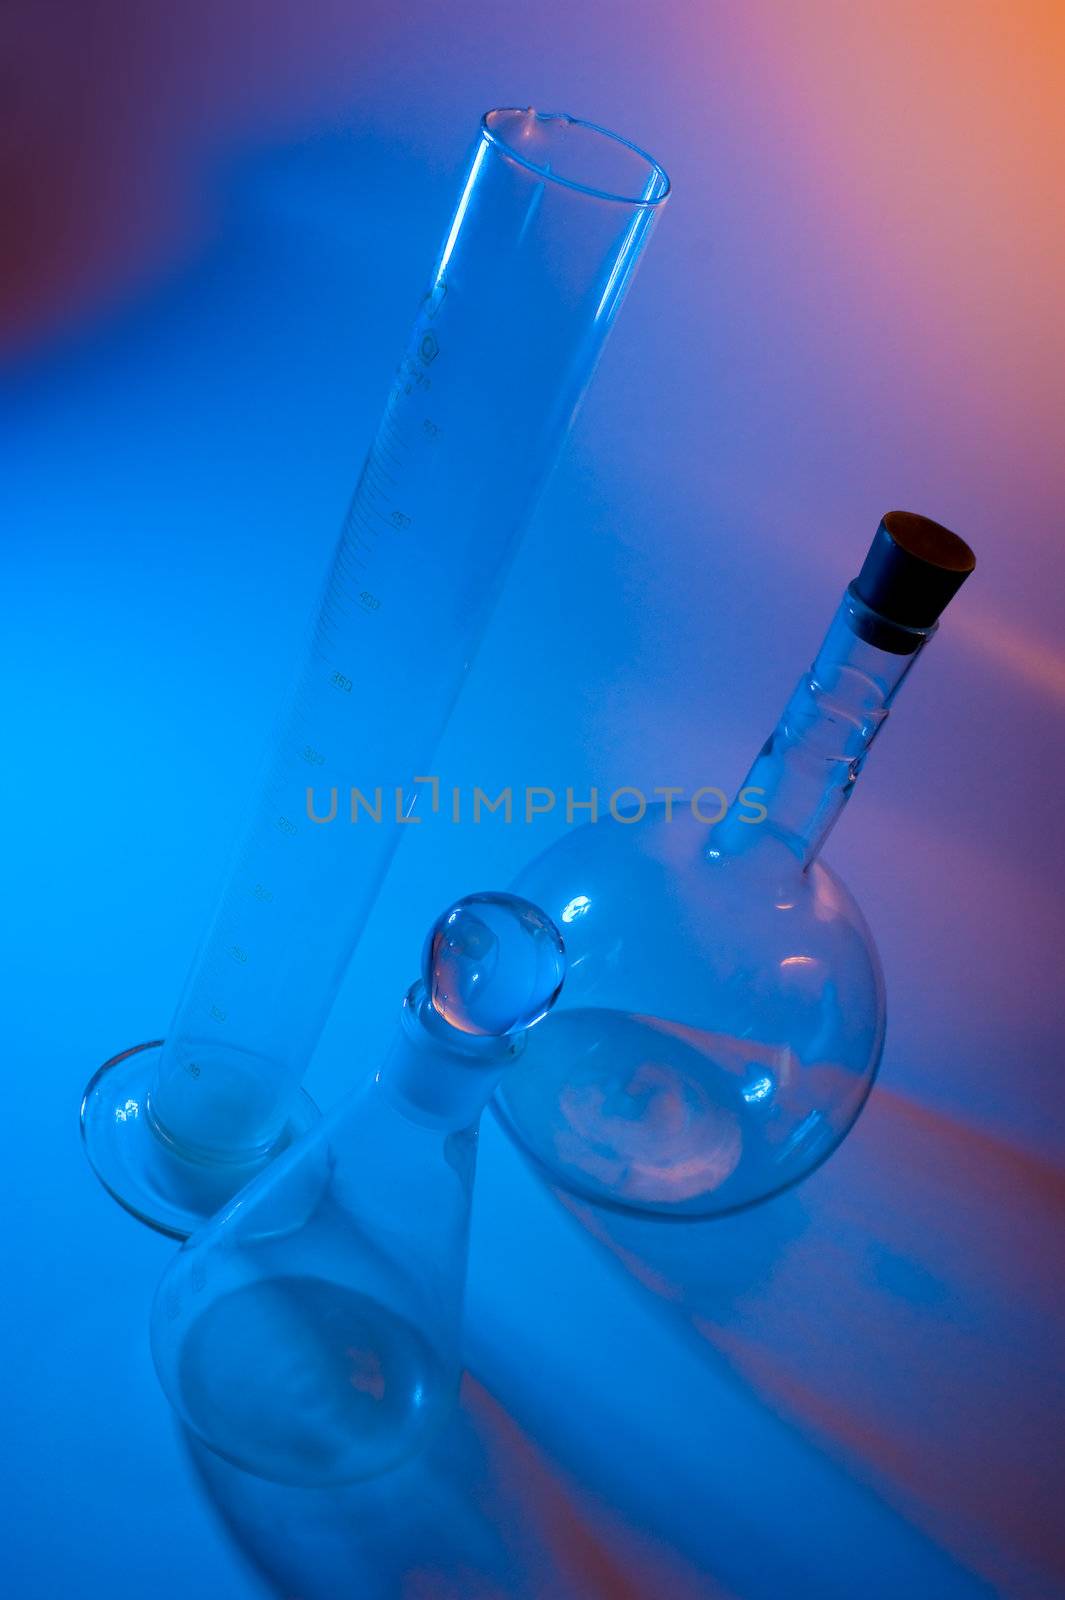 chemical glassware by oleg_zhukov